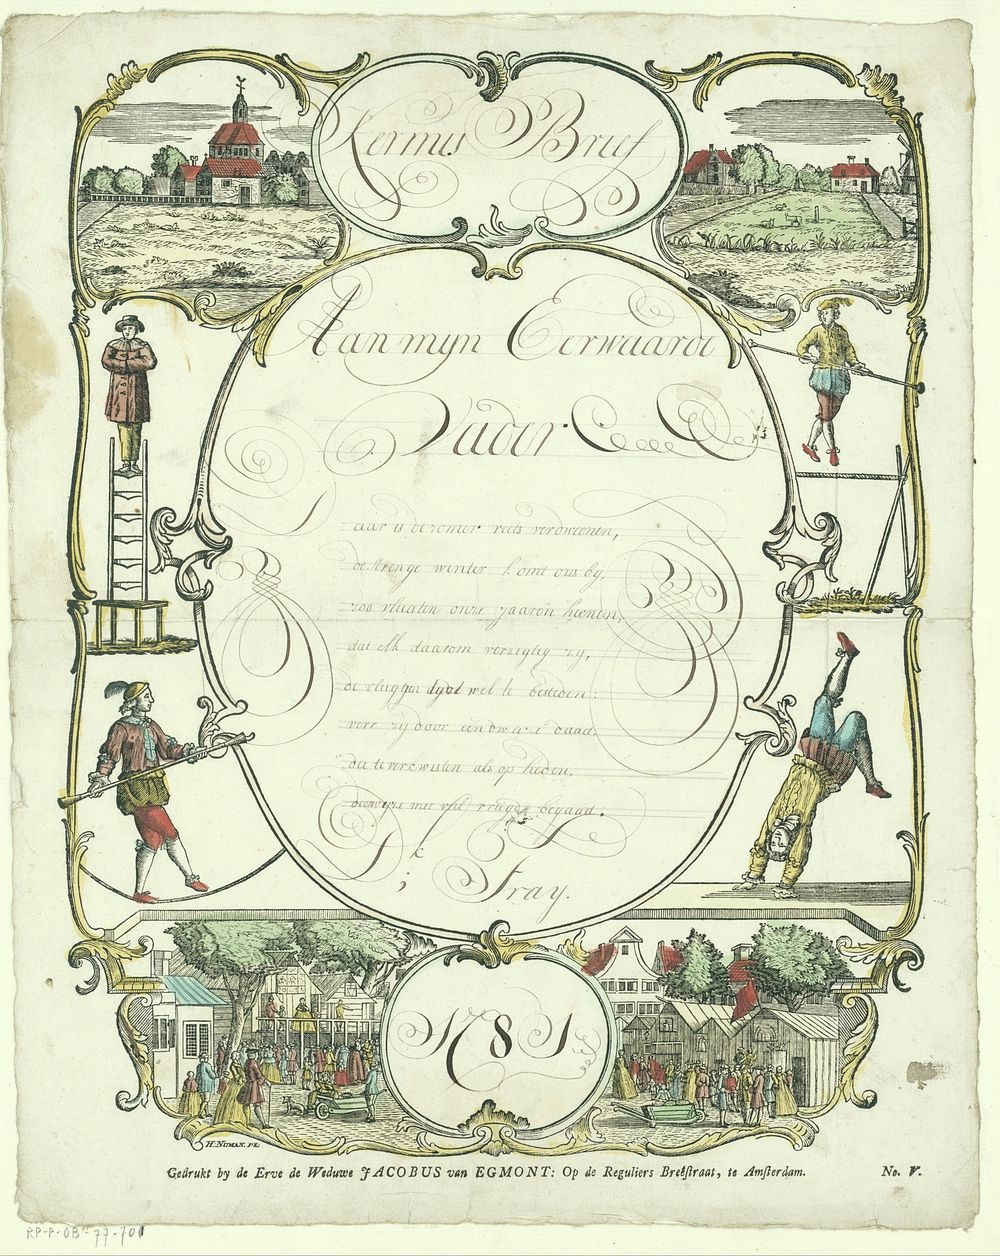 Wensbrief met kermisattracties en acrobaten (1781) by Hendrik Numan, Hermanus Numan and Erven de Weduwe Jacobus van Egmont